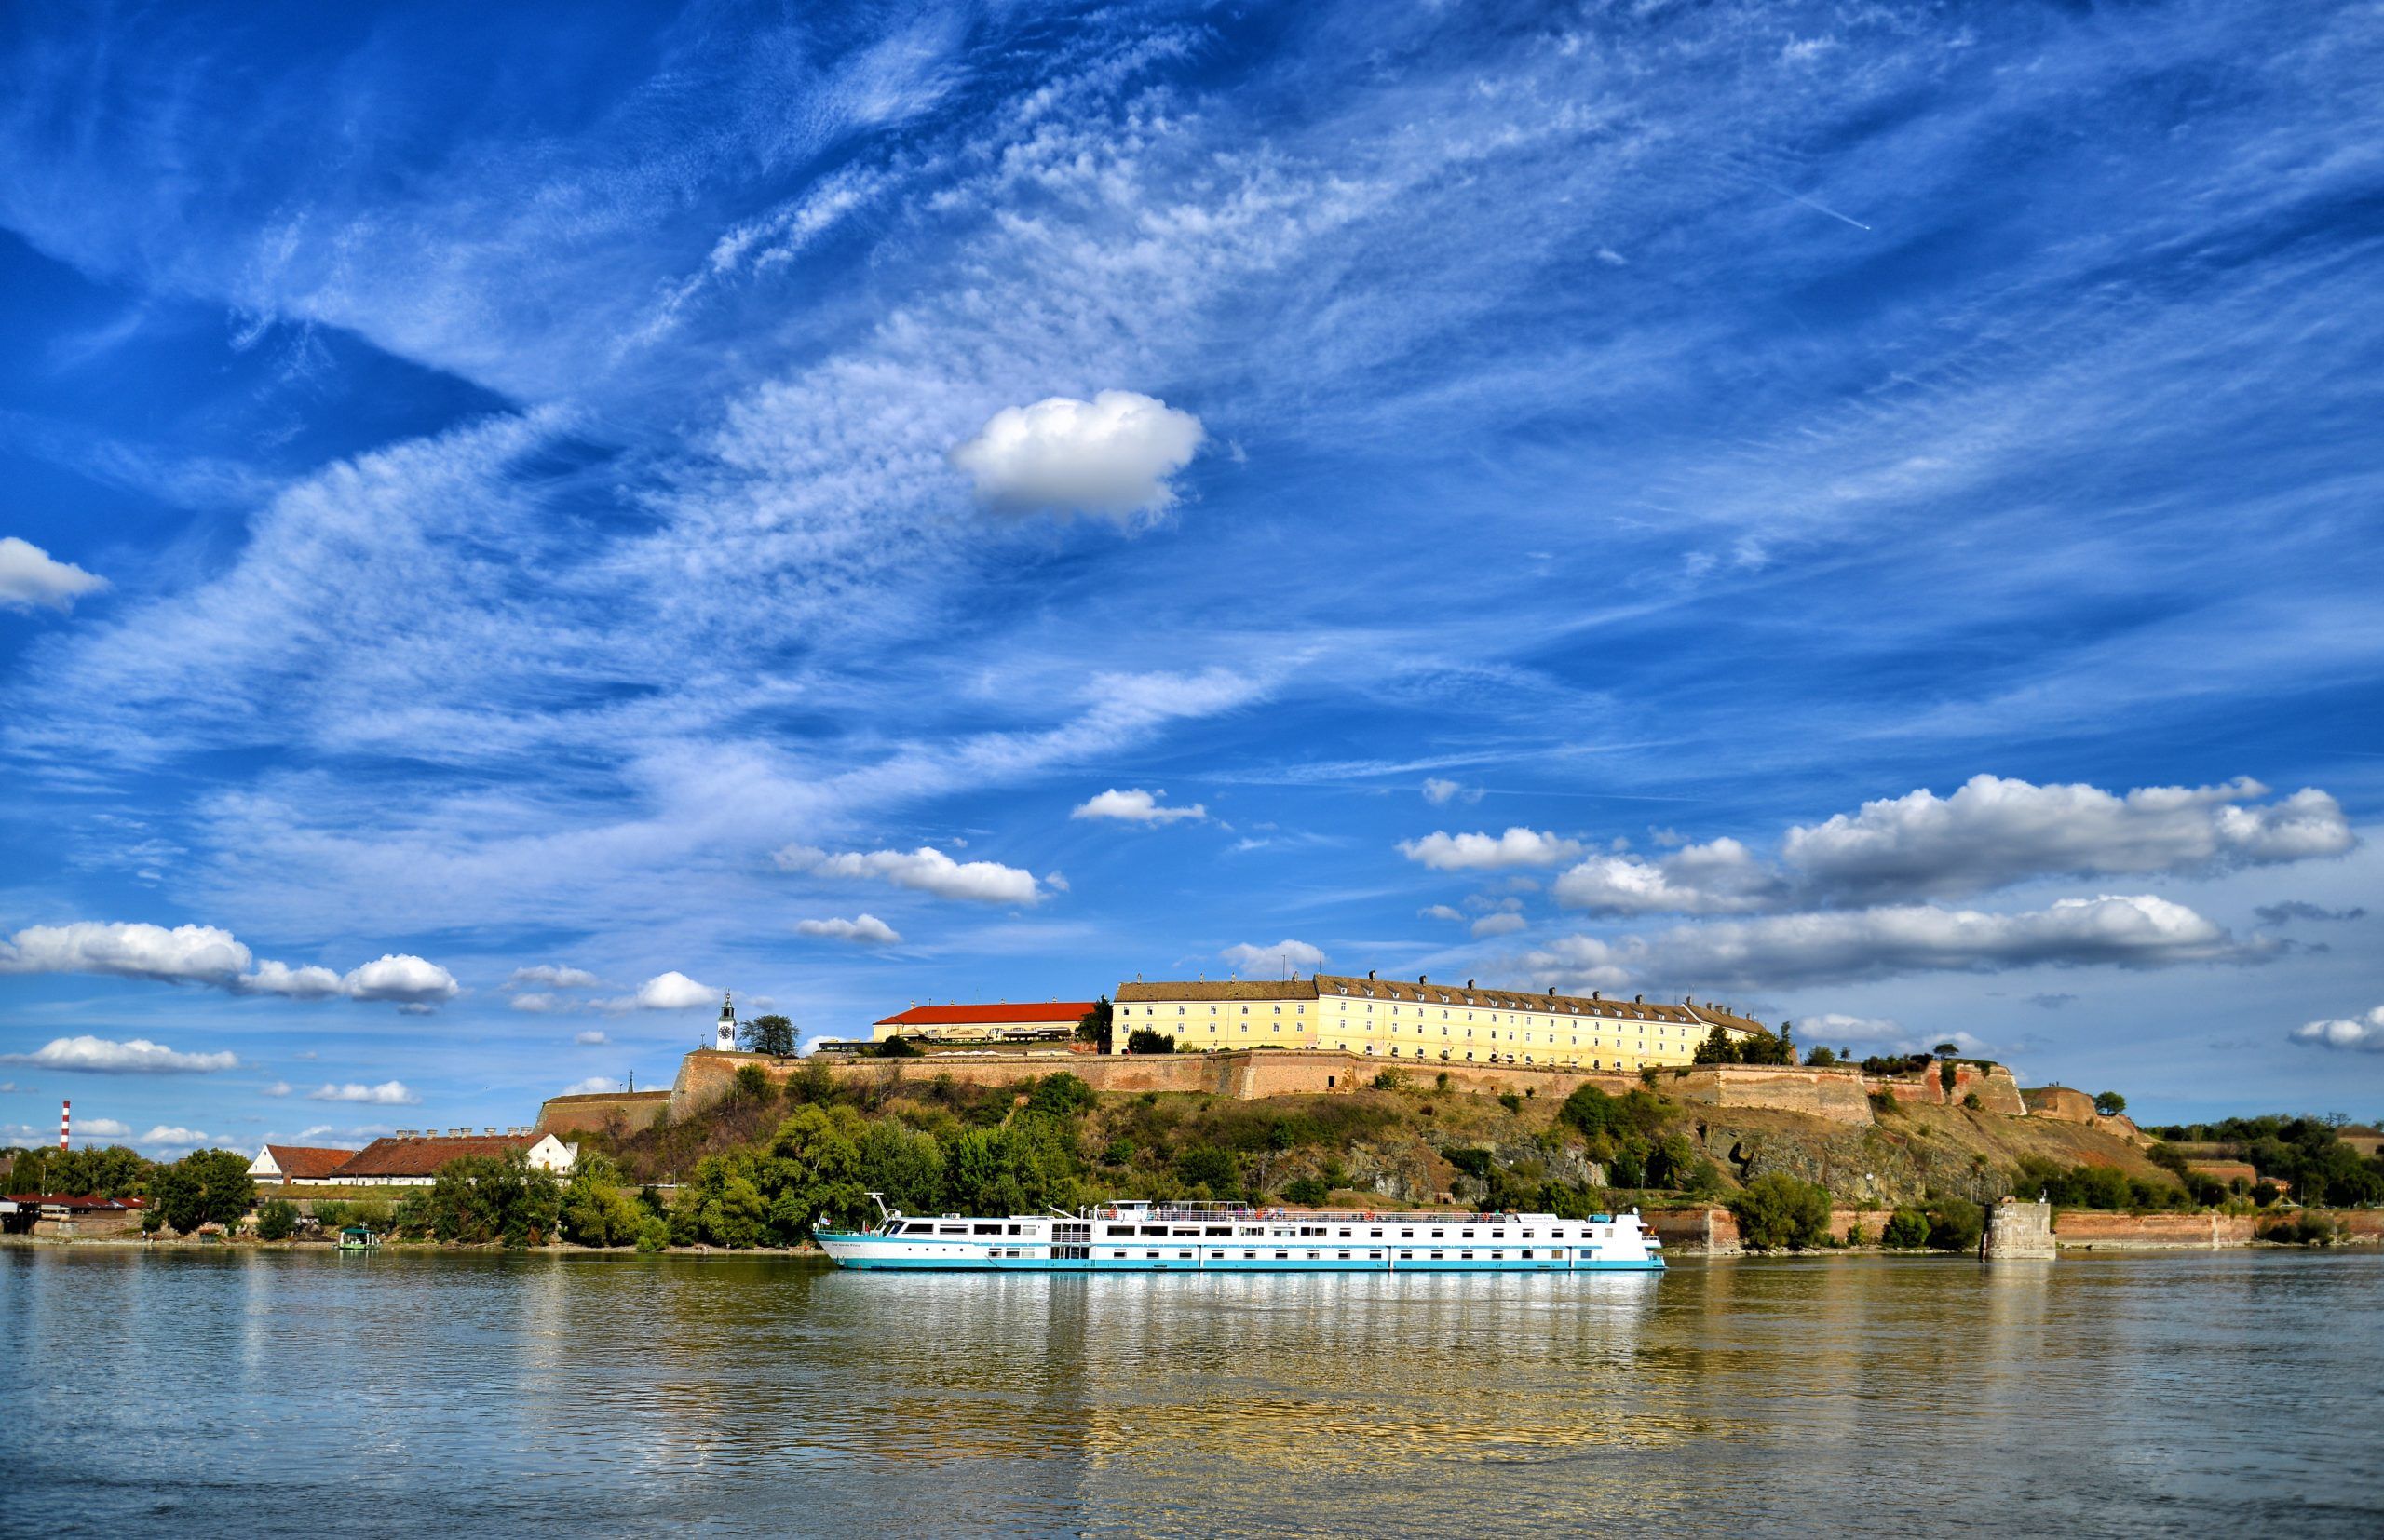 Besplatne promotivne ture obilaska centra grada i Petrovaradinske tvrđave